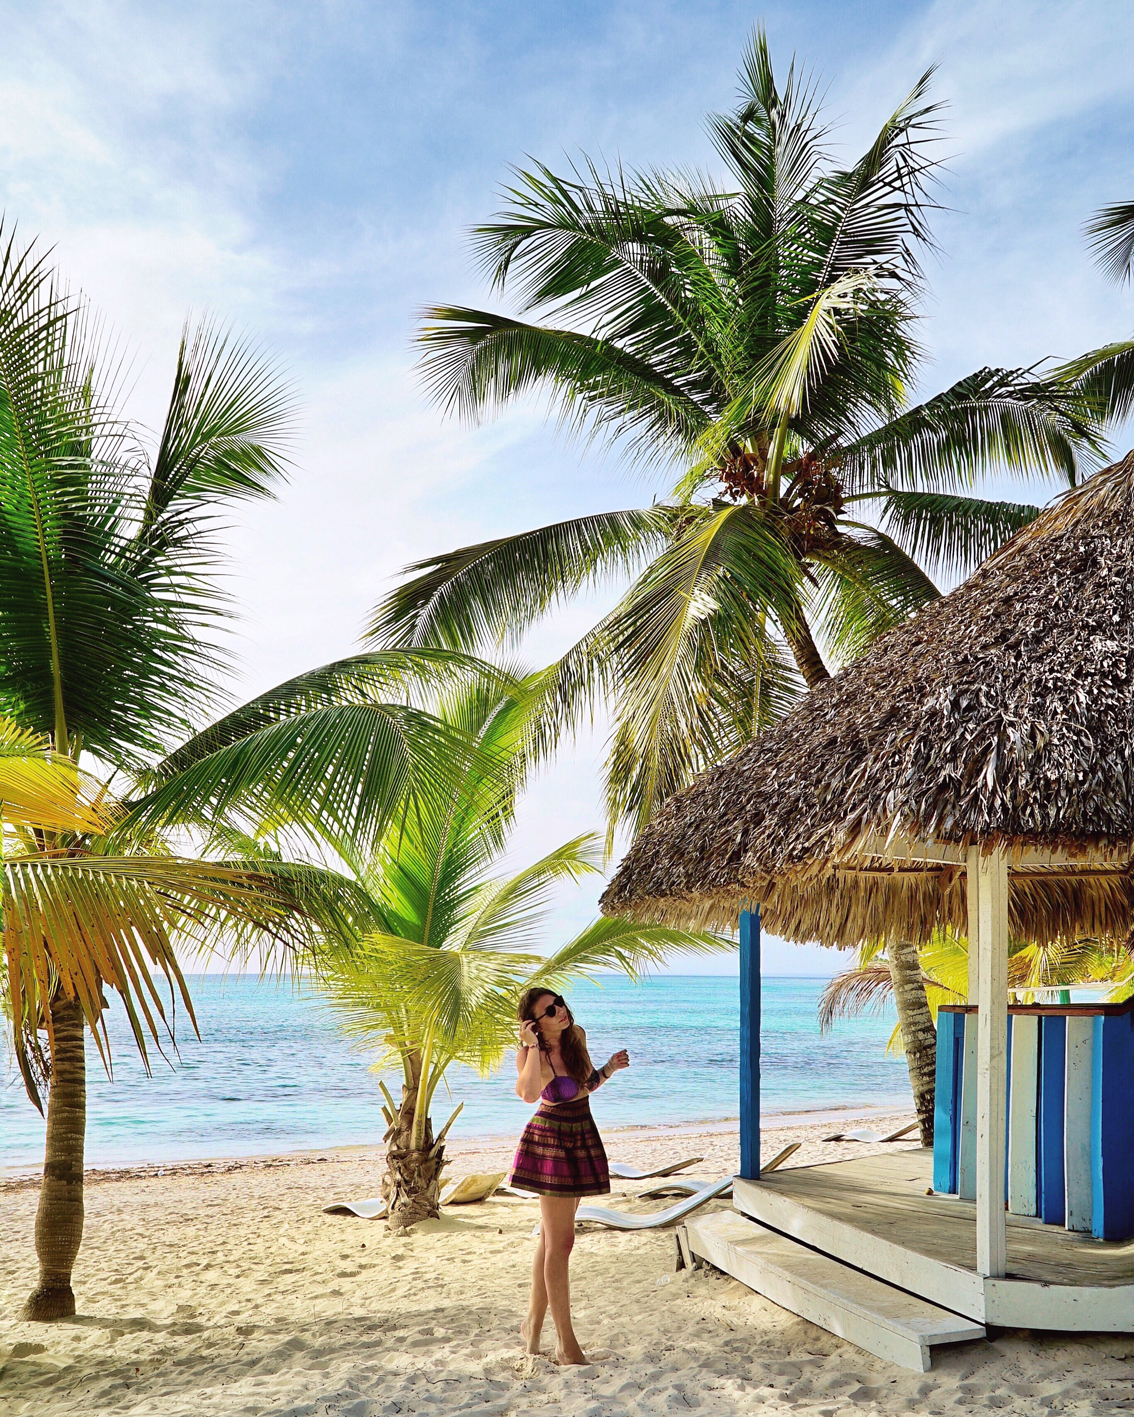 6-1 Viva Dominicus Beach, il mio viaggio ai Caraibi. Come può esser più bello il paradiso?